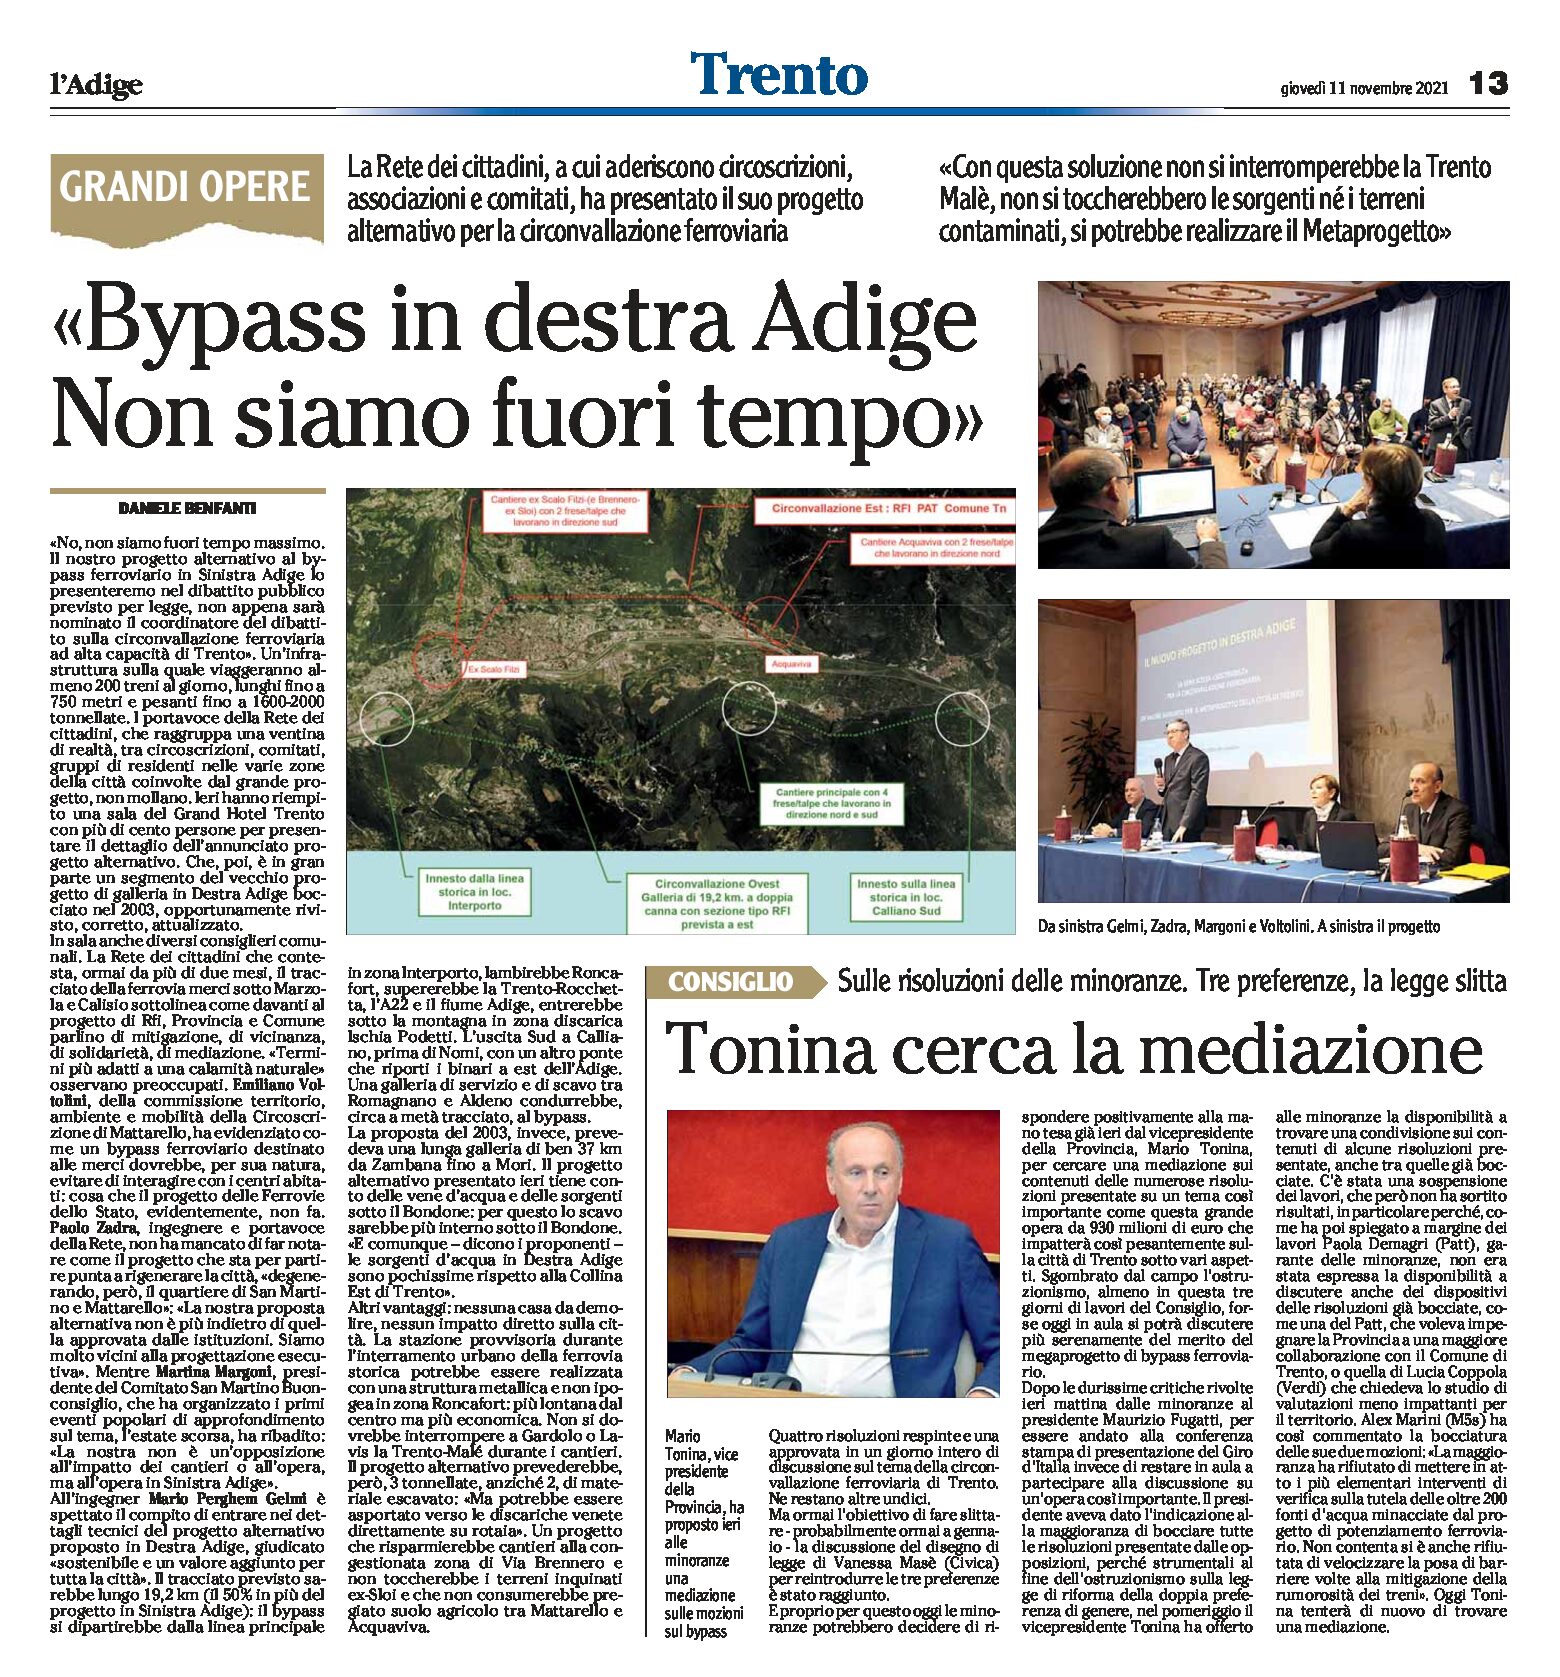 Trento: “bypass in destra Adige, non siamo fuori tempo”